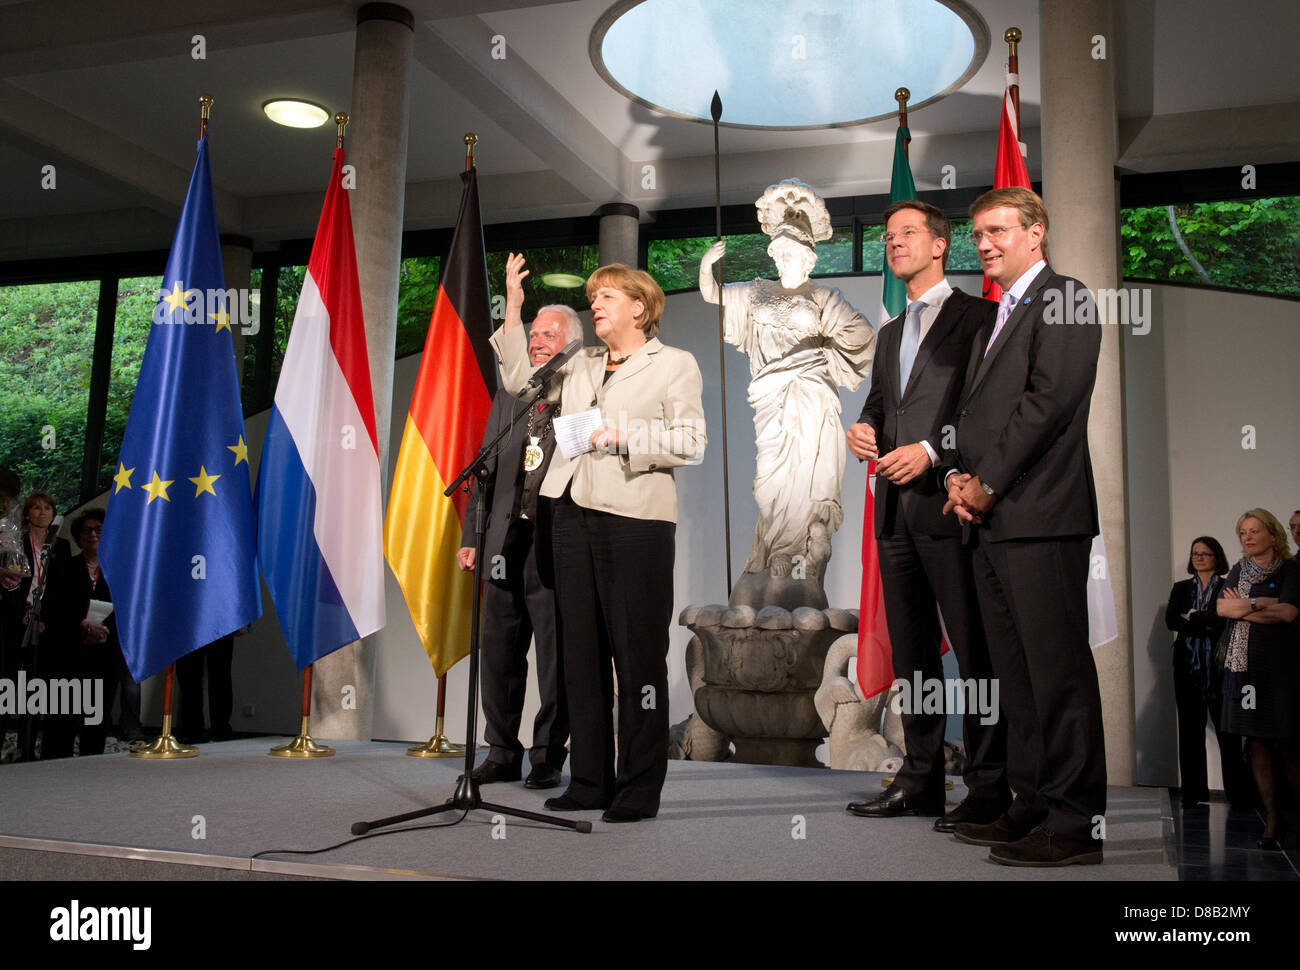 La canciller alemana, Angela Merkel, habla durante una recepción para la primera reunión del Gabinete germano-holandesa con el Alcalde de Kleve Theodor Brauer (L), así como el primer ministro holandés, Mark Rutte (2-R) y la Cancillería, Ministro Ronald Pofalla (R) en el Kurhaus Museo en Kleve, Alemania, 23 de mayo de 2013. Foto: Bernd Thyssen Foto de stock